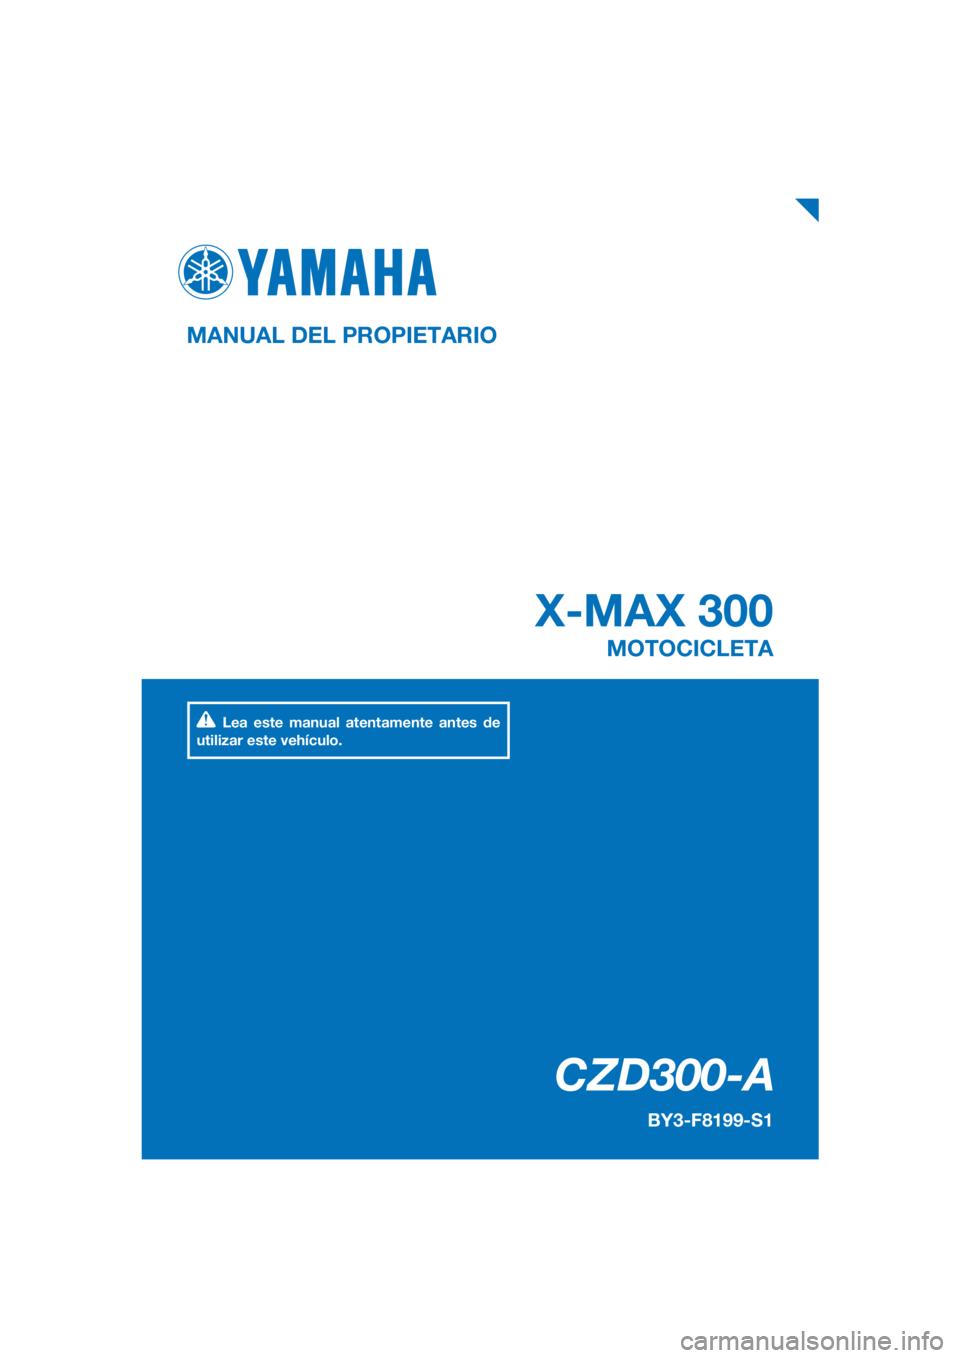 YAMAHA XMAX 300 2018  Manuale de Empleo (in Spanish) PANTONE285C
CZD300-A
X-MAX 300
MANUAL DEL PROPIETARIO
BY3-F8199-S1
MOTOCICLETA
Lea este manual atentamente antes de 
utilizar este vehículo.
[Spanish  (S)] 